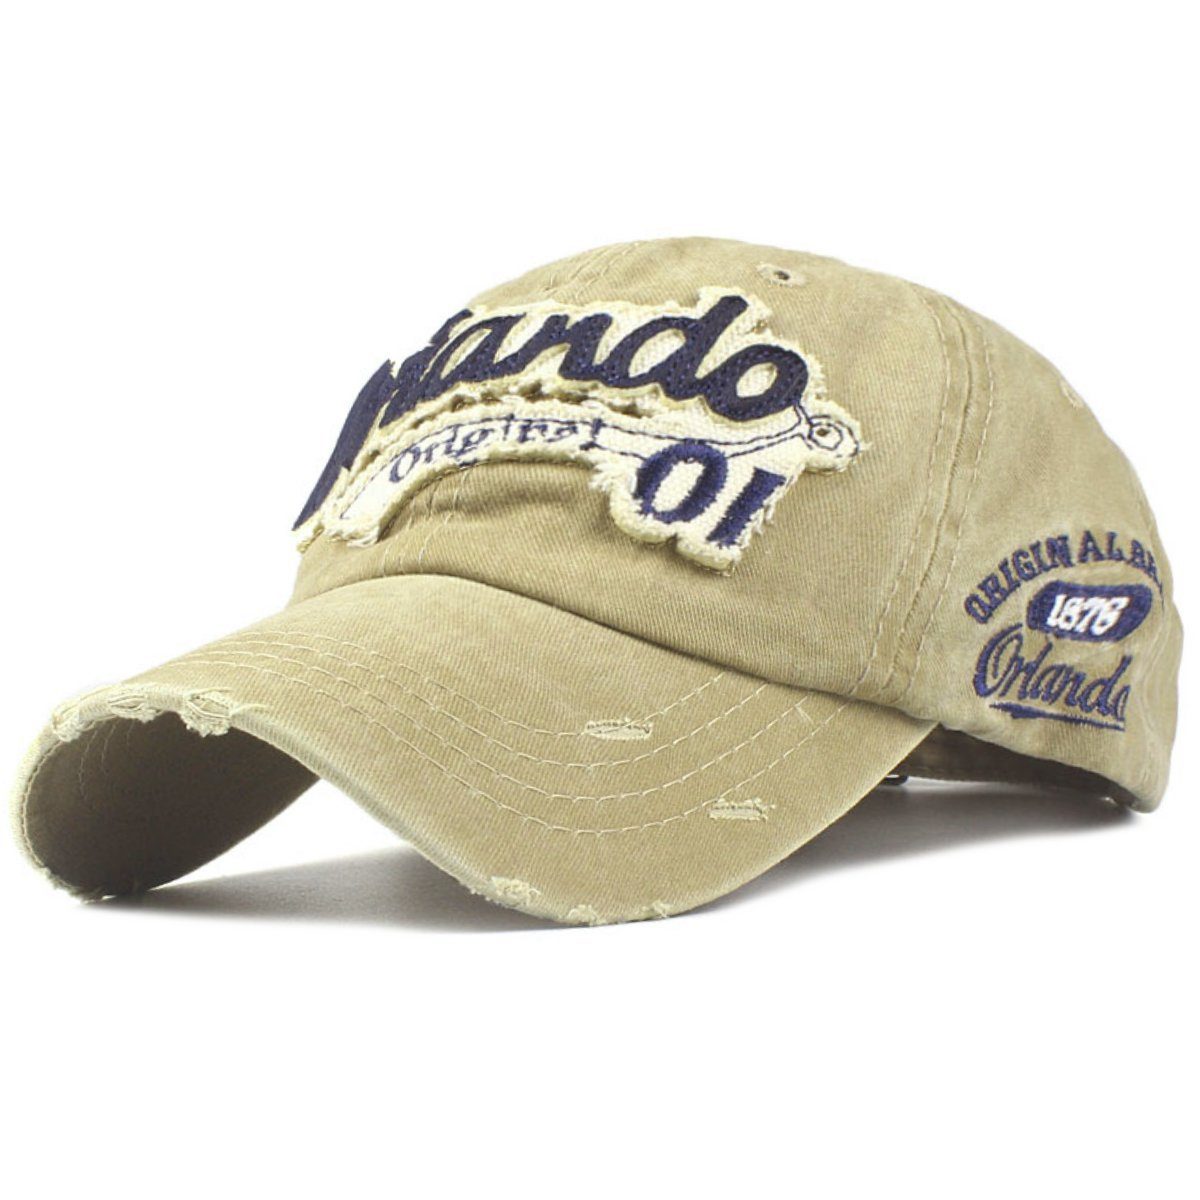 Sporty Baseball Cap Orlando Original Vintage Style Used Washed Look Retro Baseballcap khaki